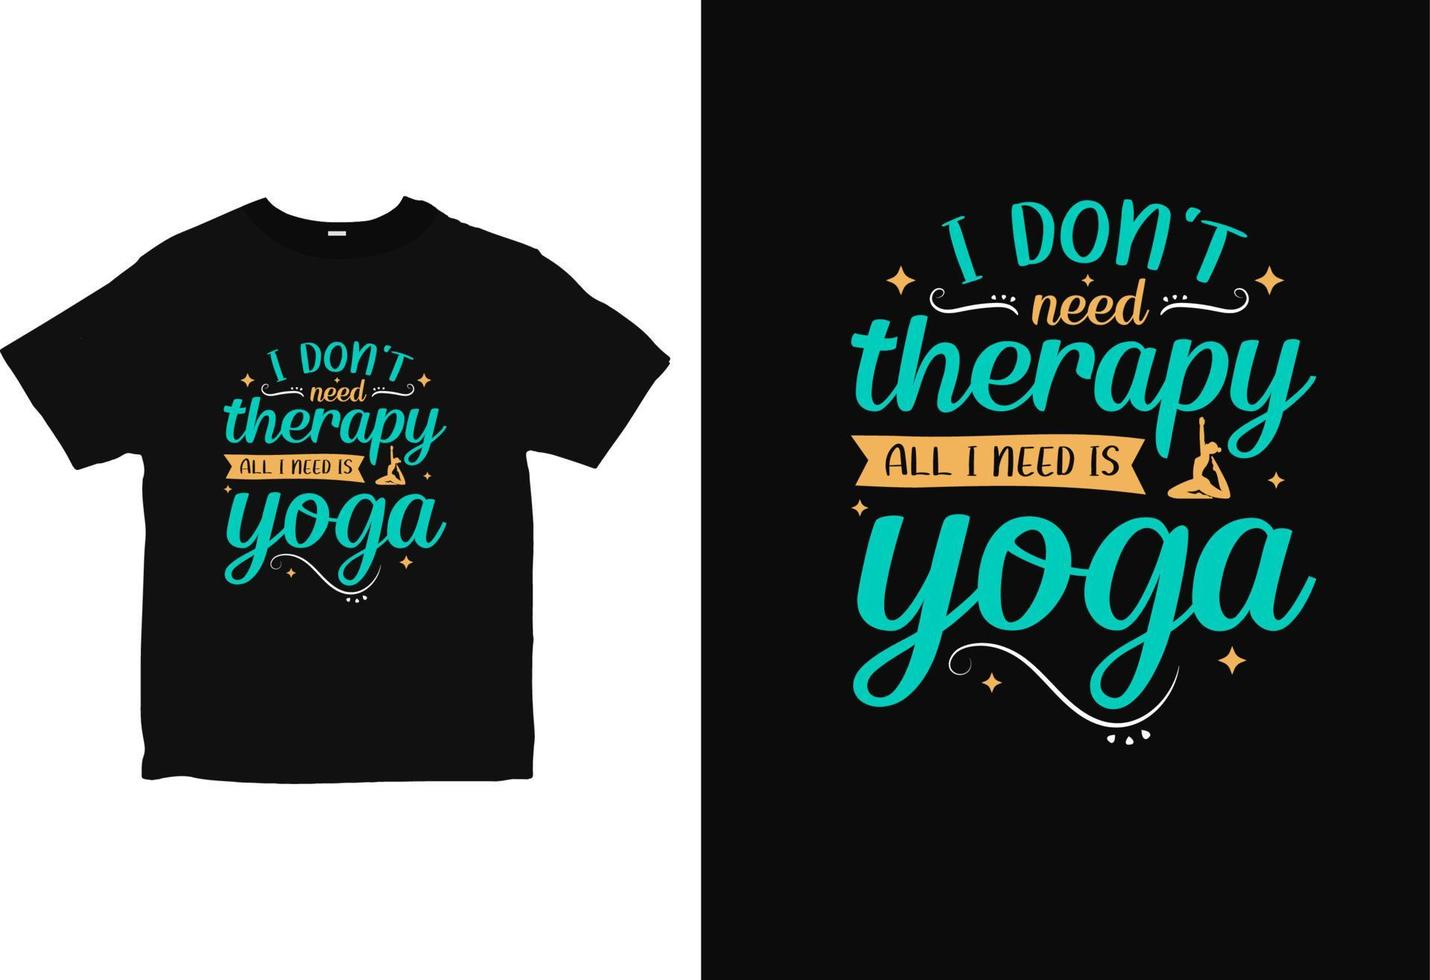 conception de t-shirt de yoga à l'état d'esprit positif, vecteur de conception de chemise de yoga typographie